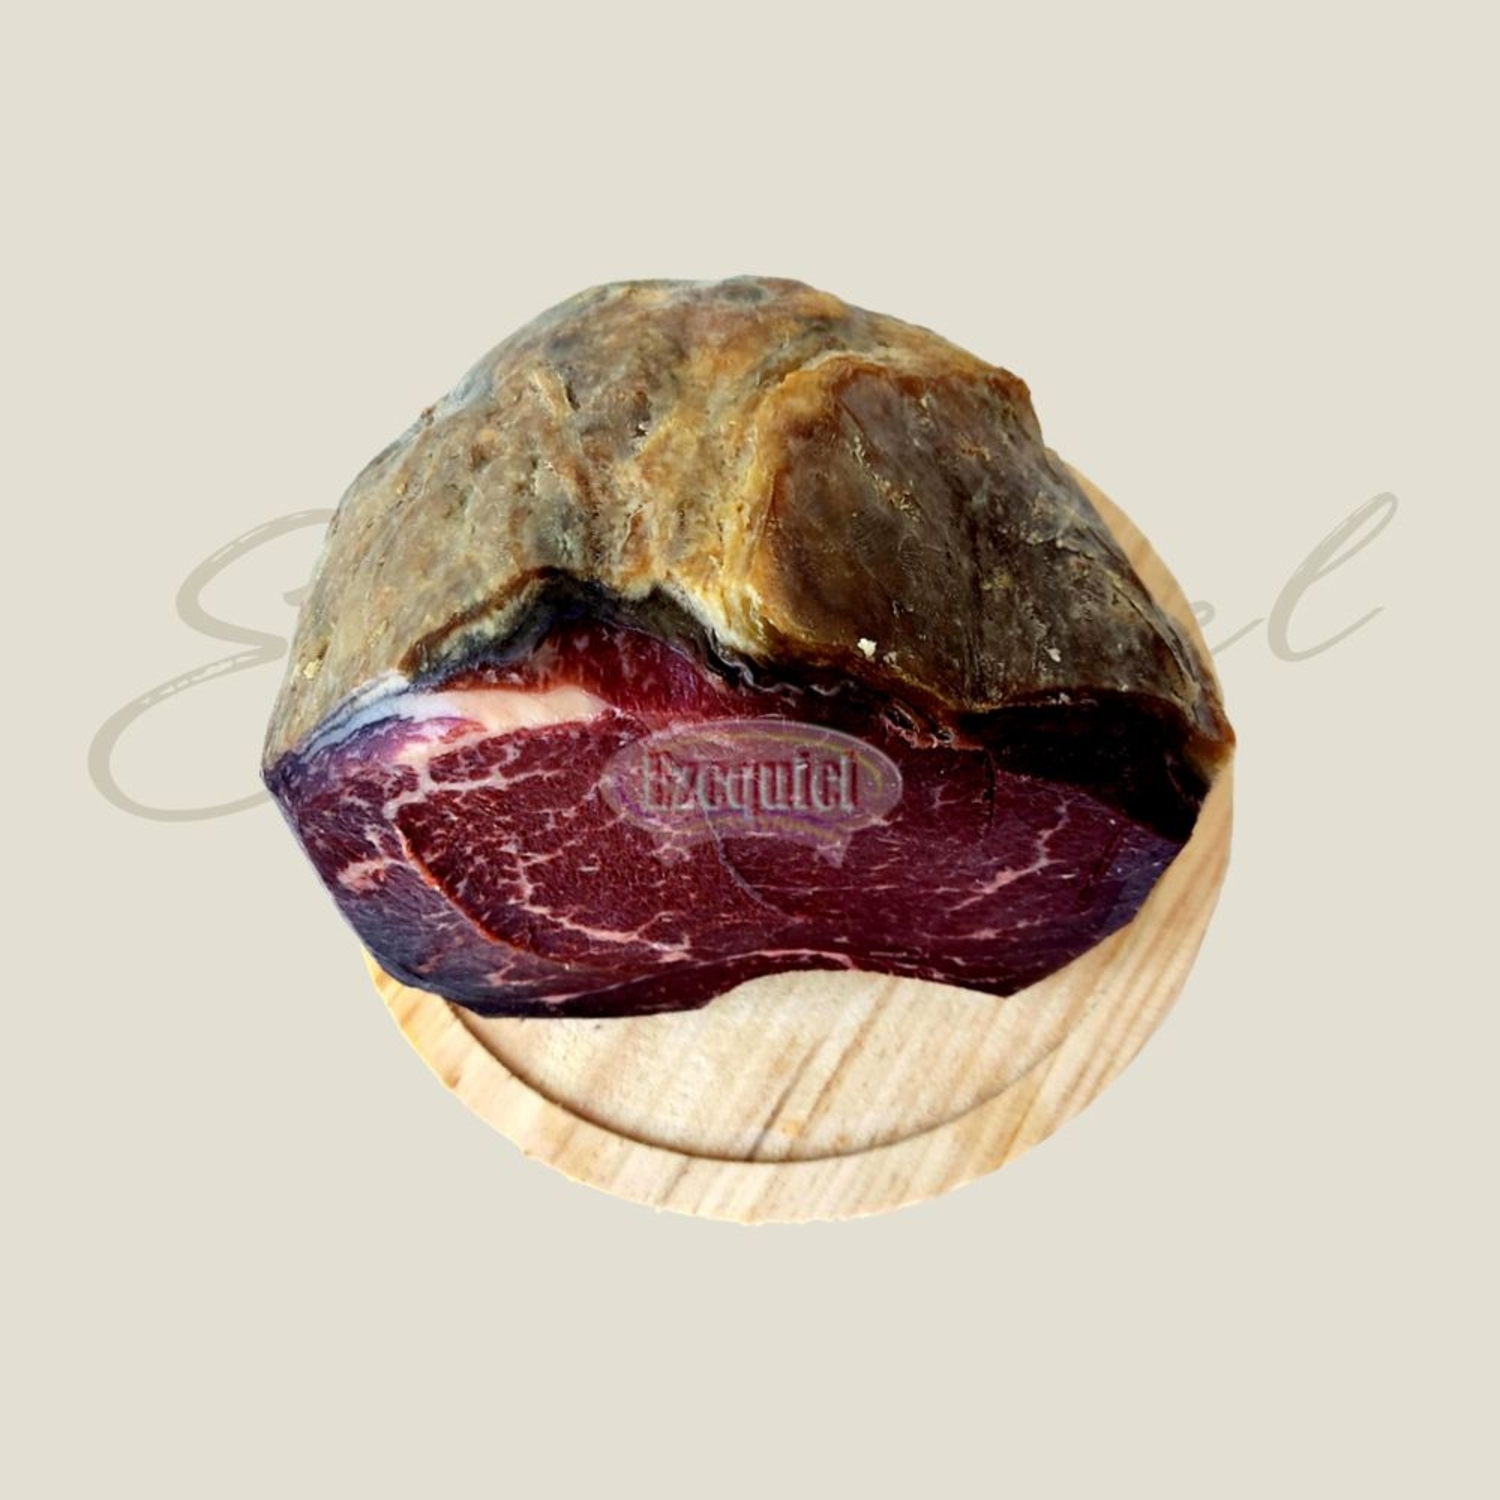 Cecina de León Feblame (smoked cured beef)